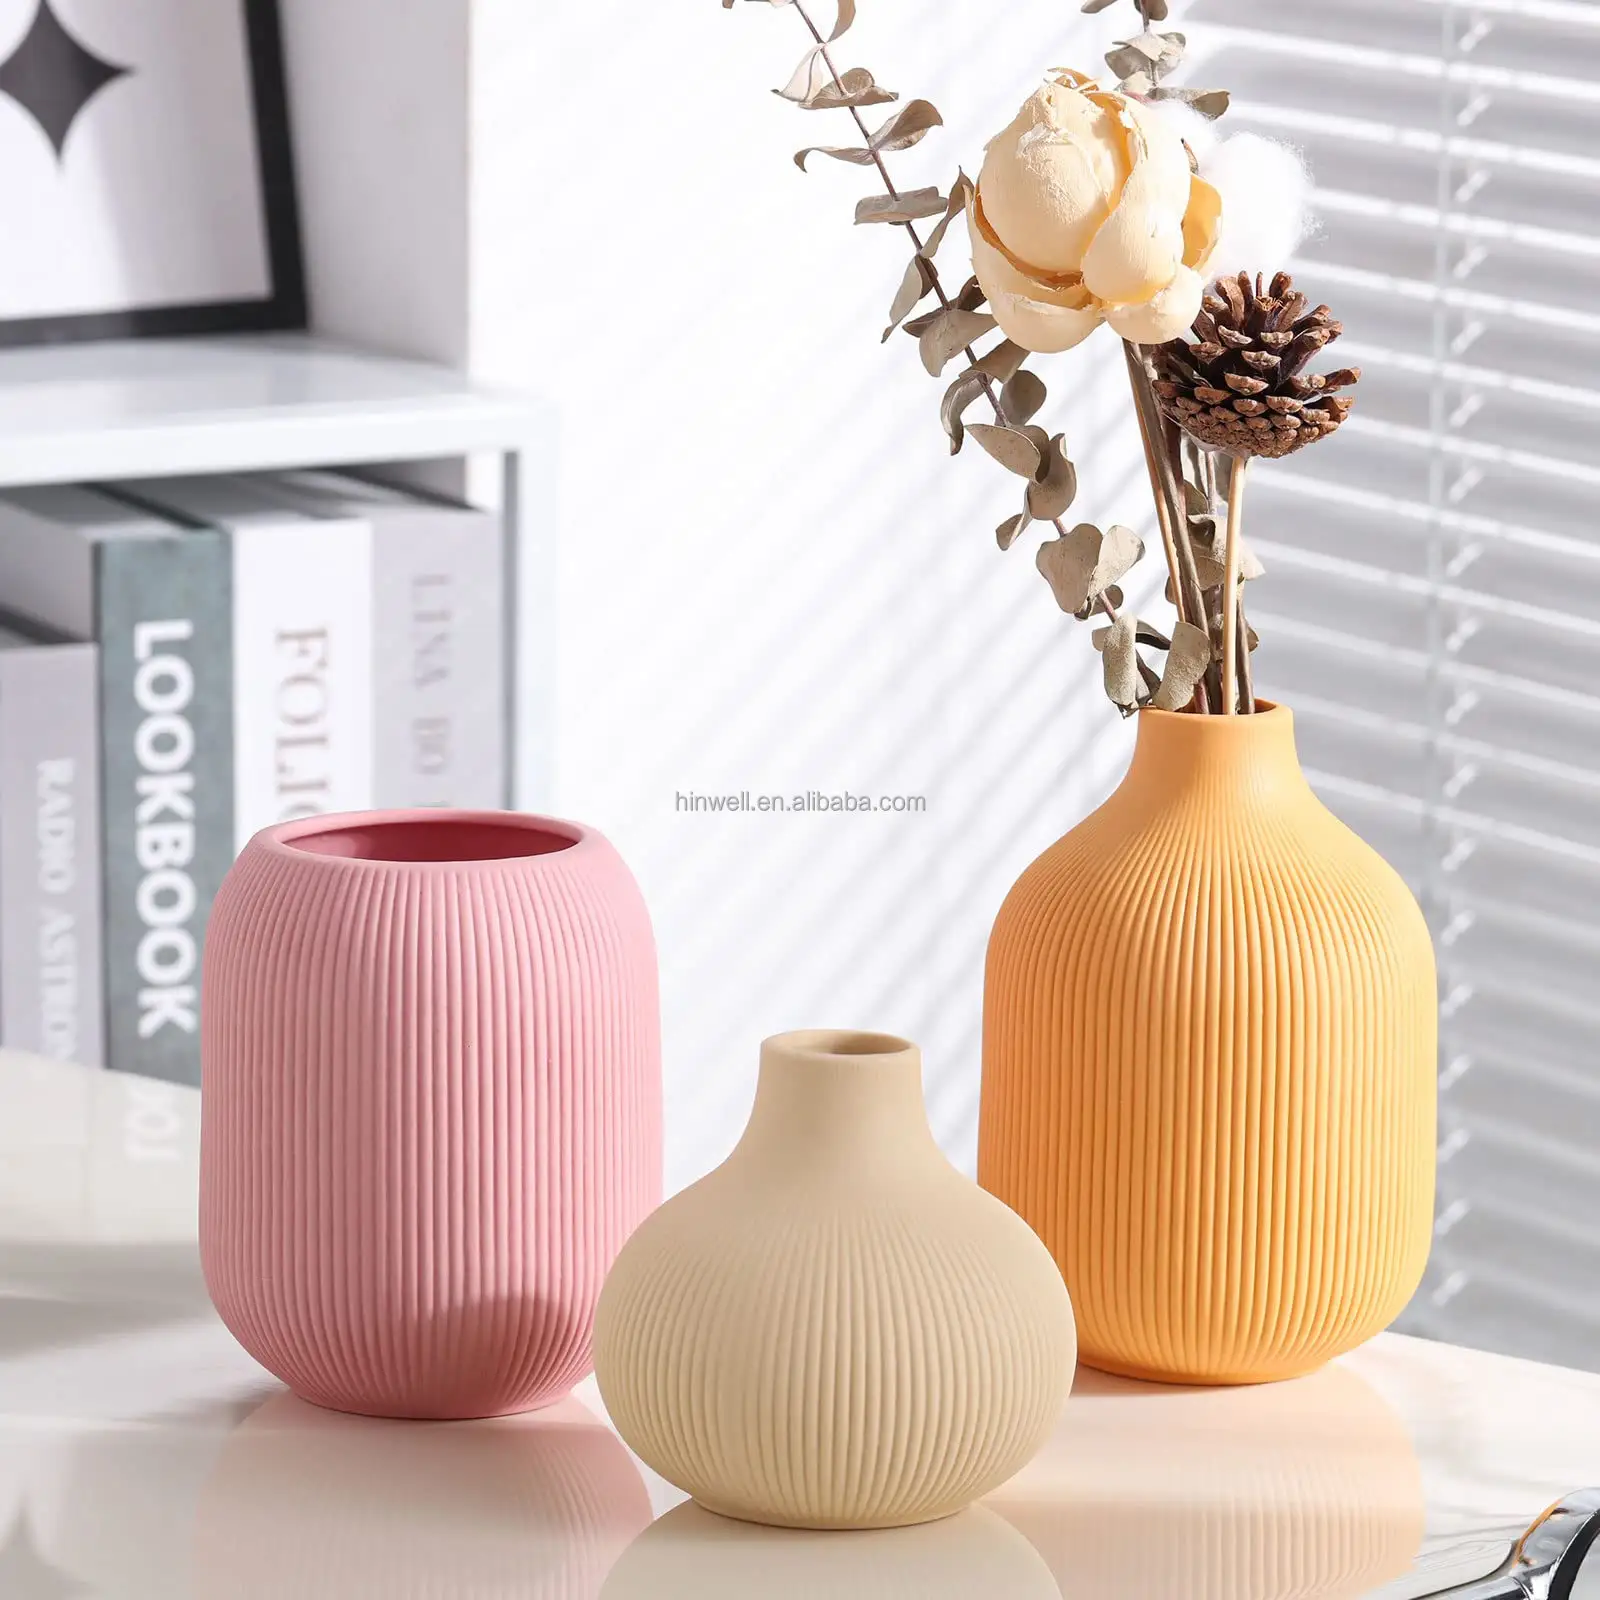 Jarrones decorativos bohemios de estilo minimalista rústico hechos a mano, jarrón de cerámica Premium naranja para pampas